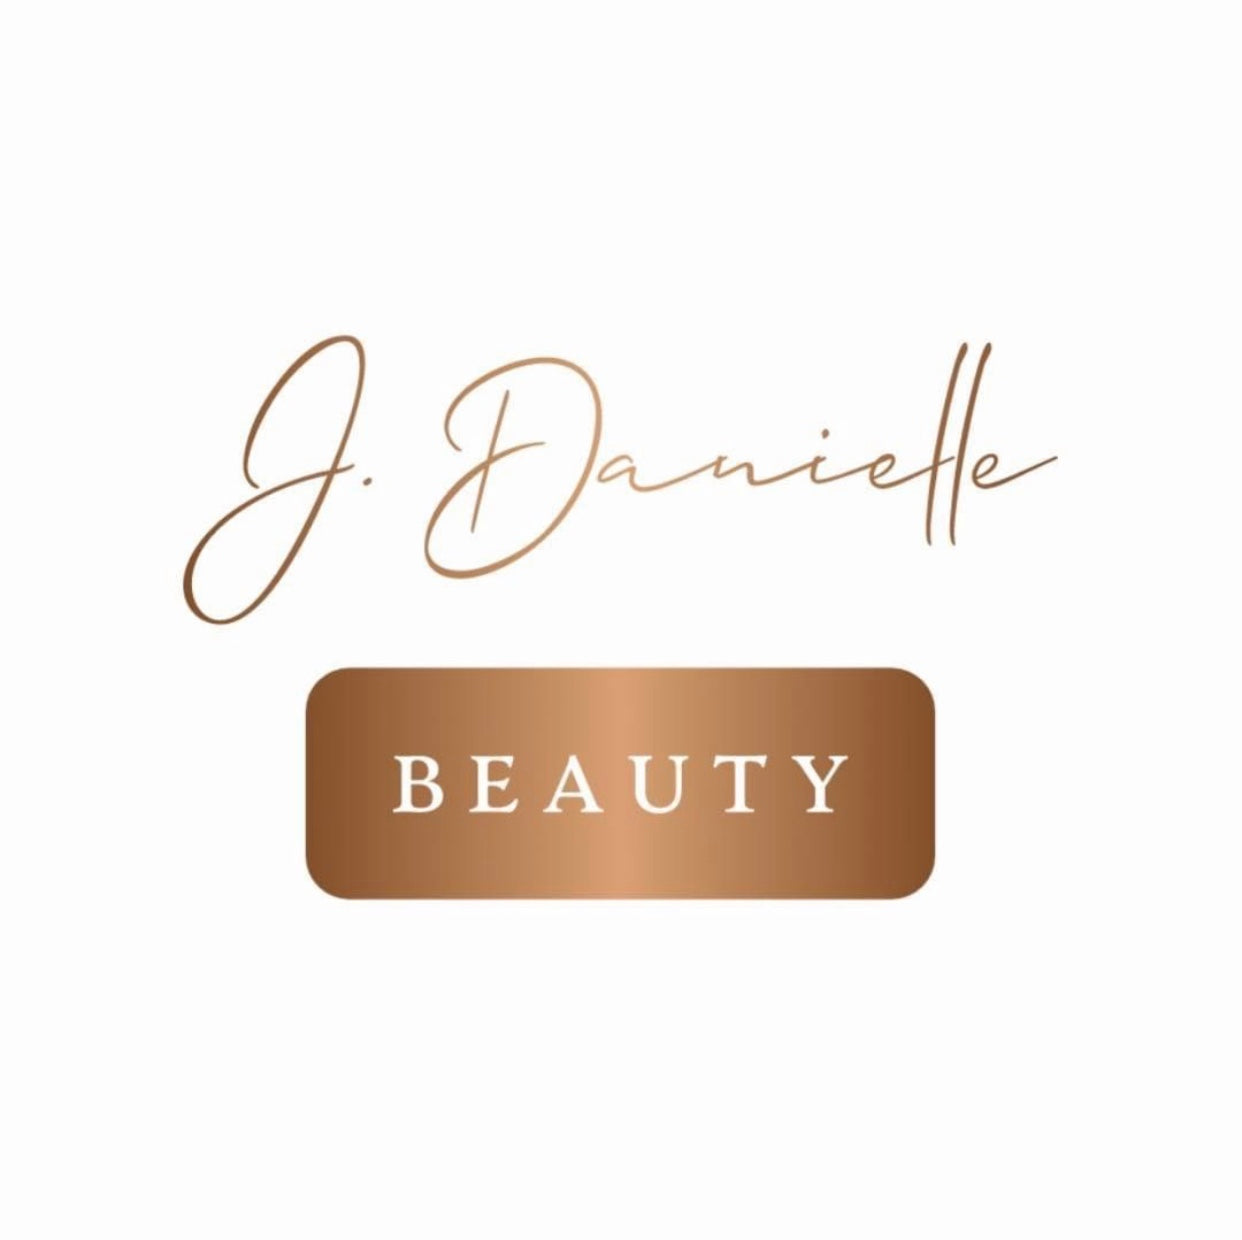 J. Danielle Beauty